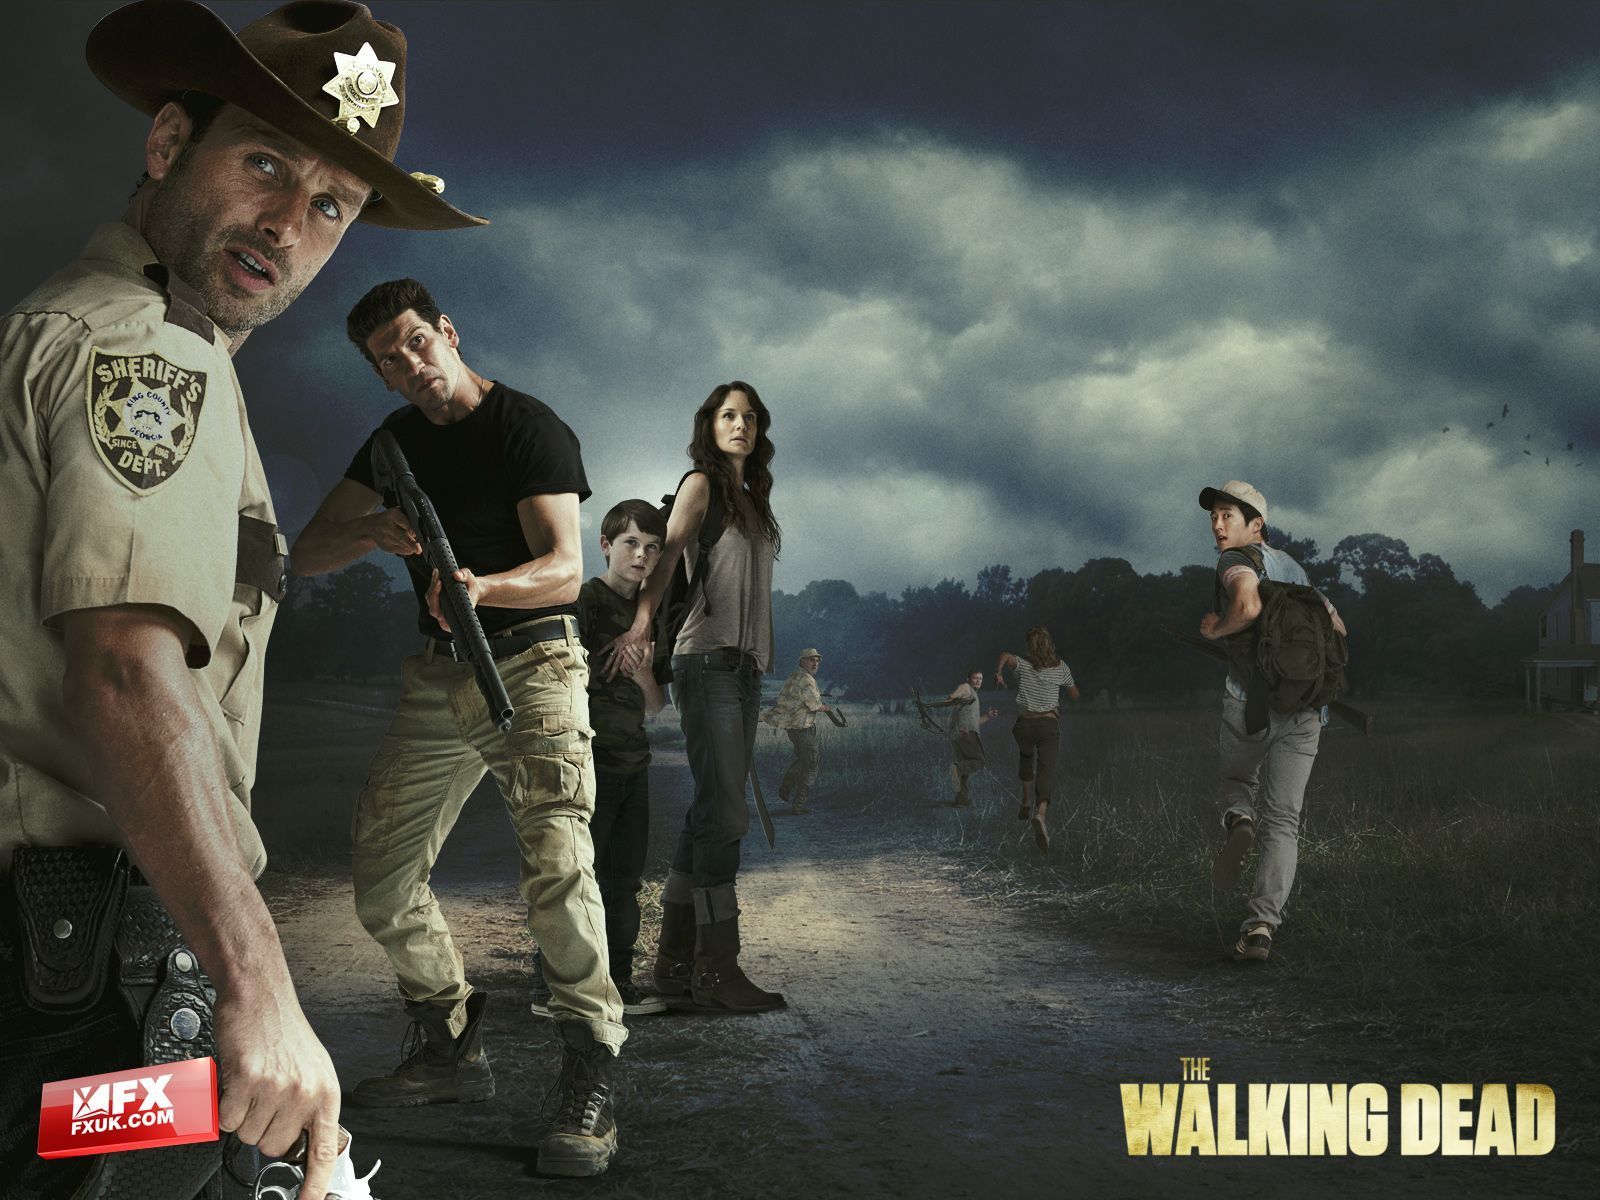 The Walking Dead Wallpaper - #20034406 (1280x1024) | Desktop ...